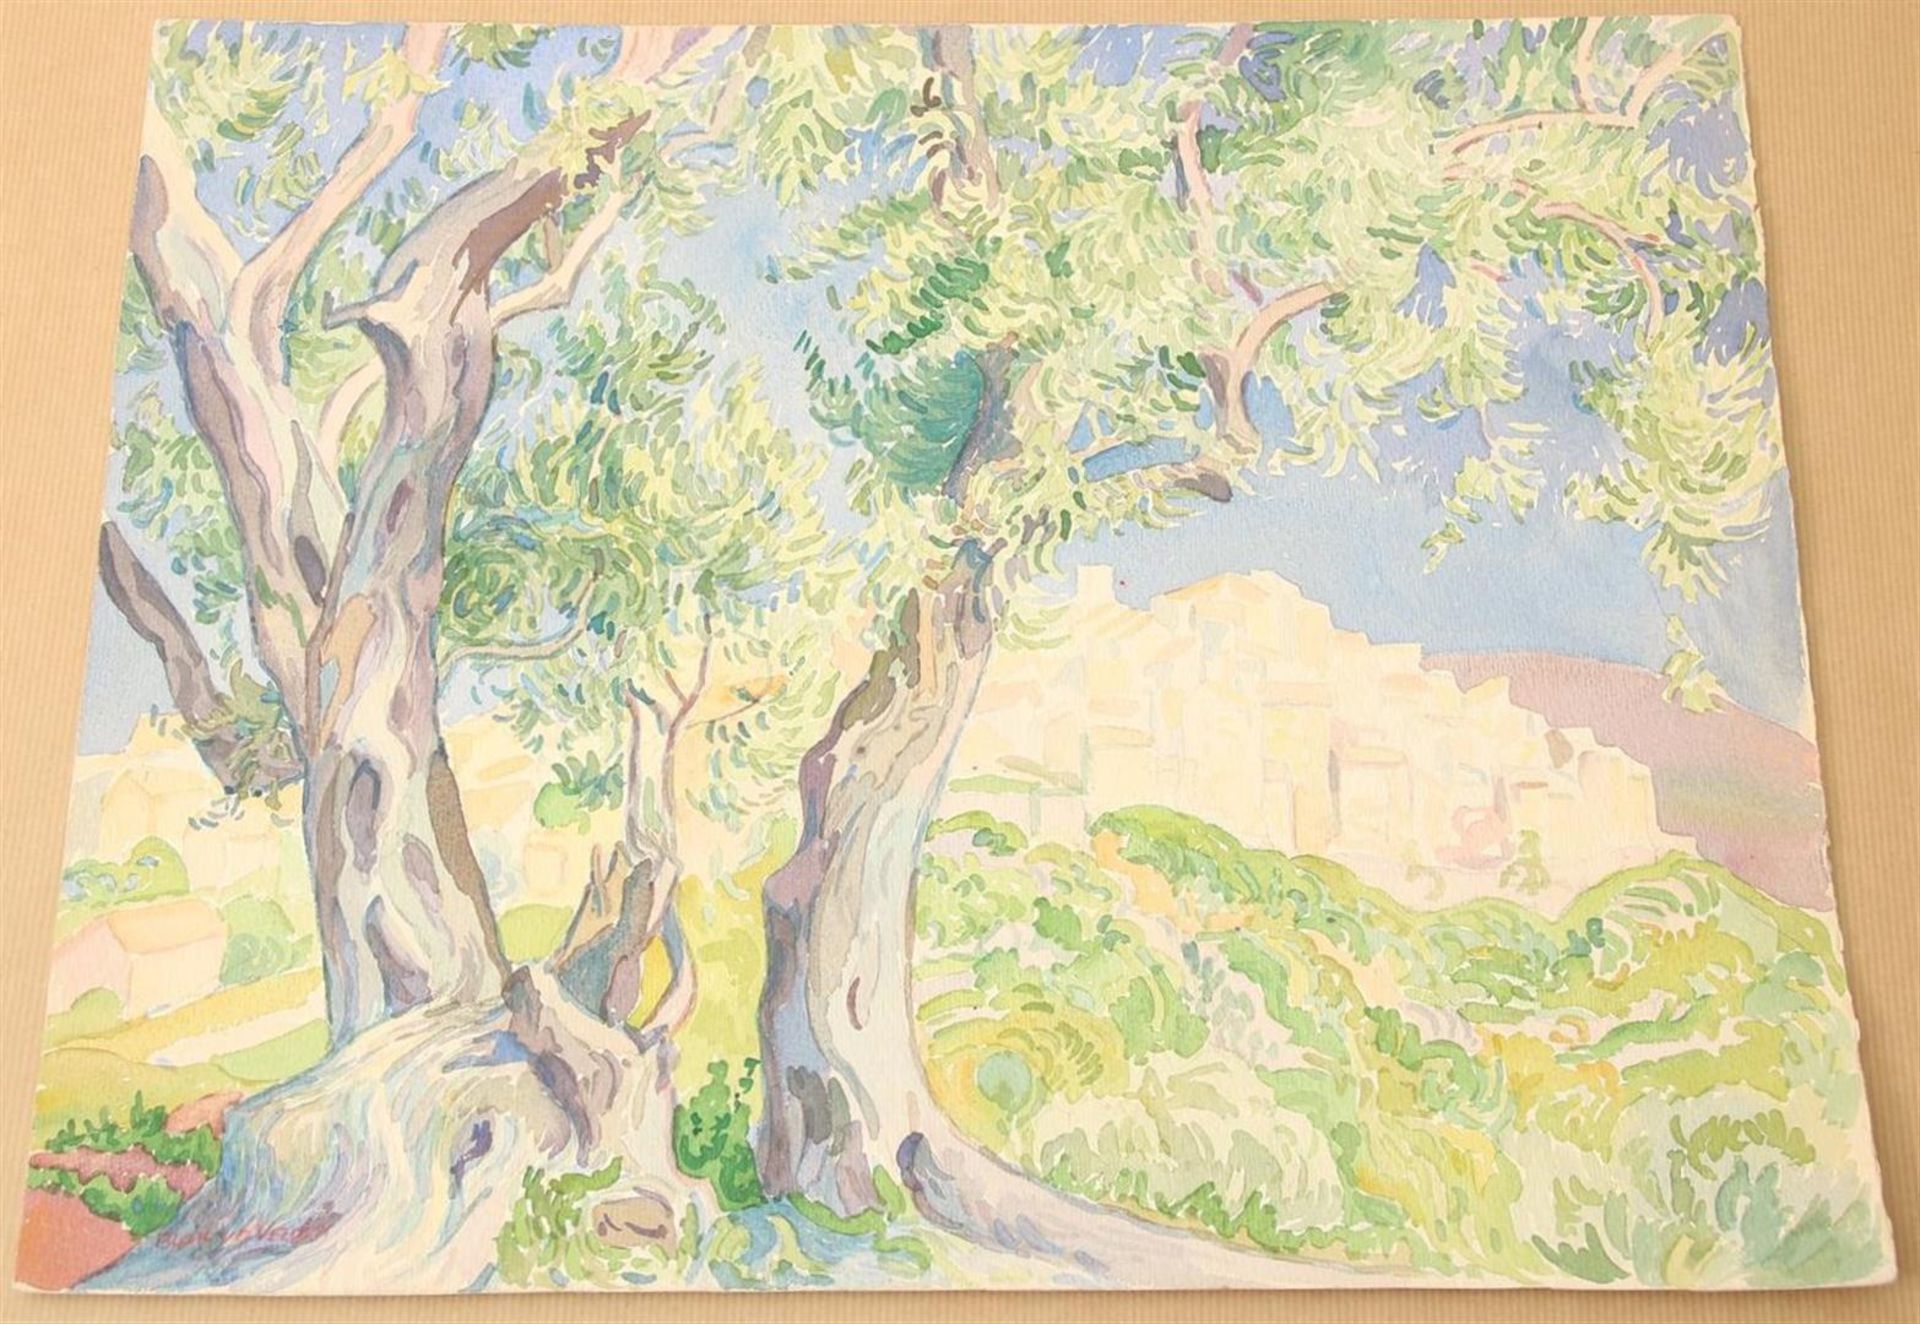 Blok van der Velden, Ad, Trees with a view of Menton